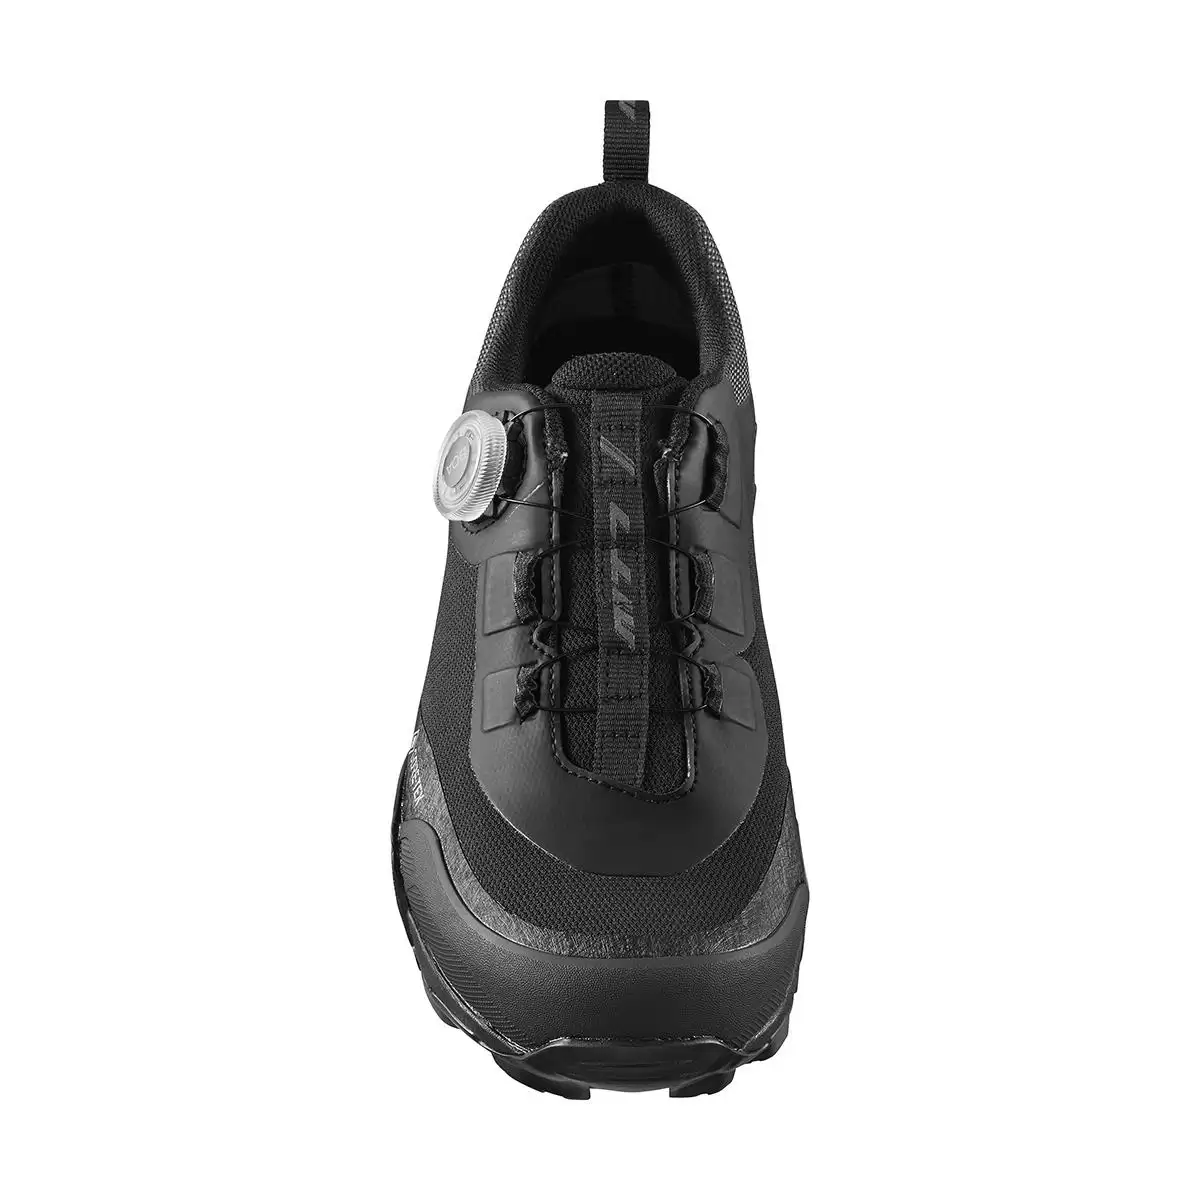 MTB Shoes SH-MT701GTX MT701 Black Size 42 #1